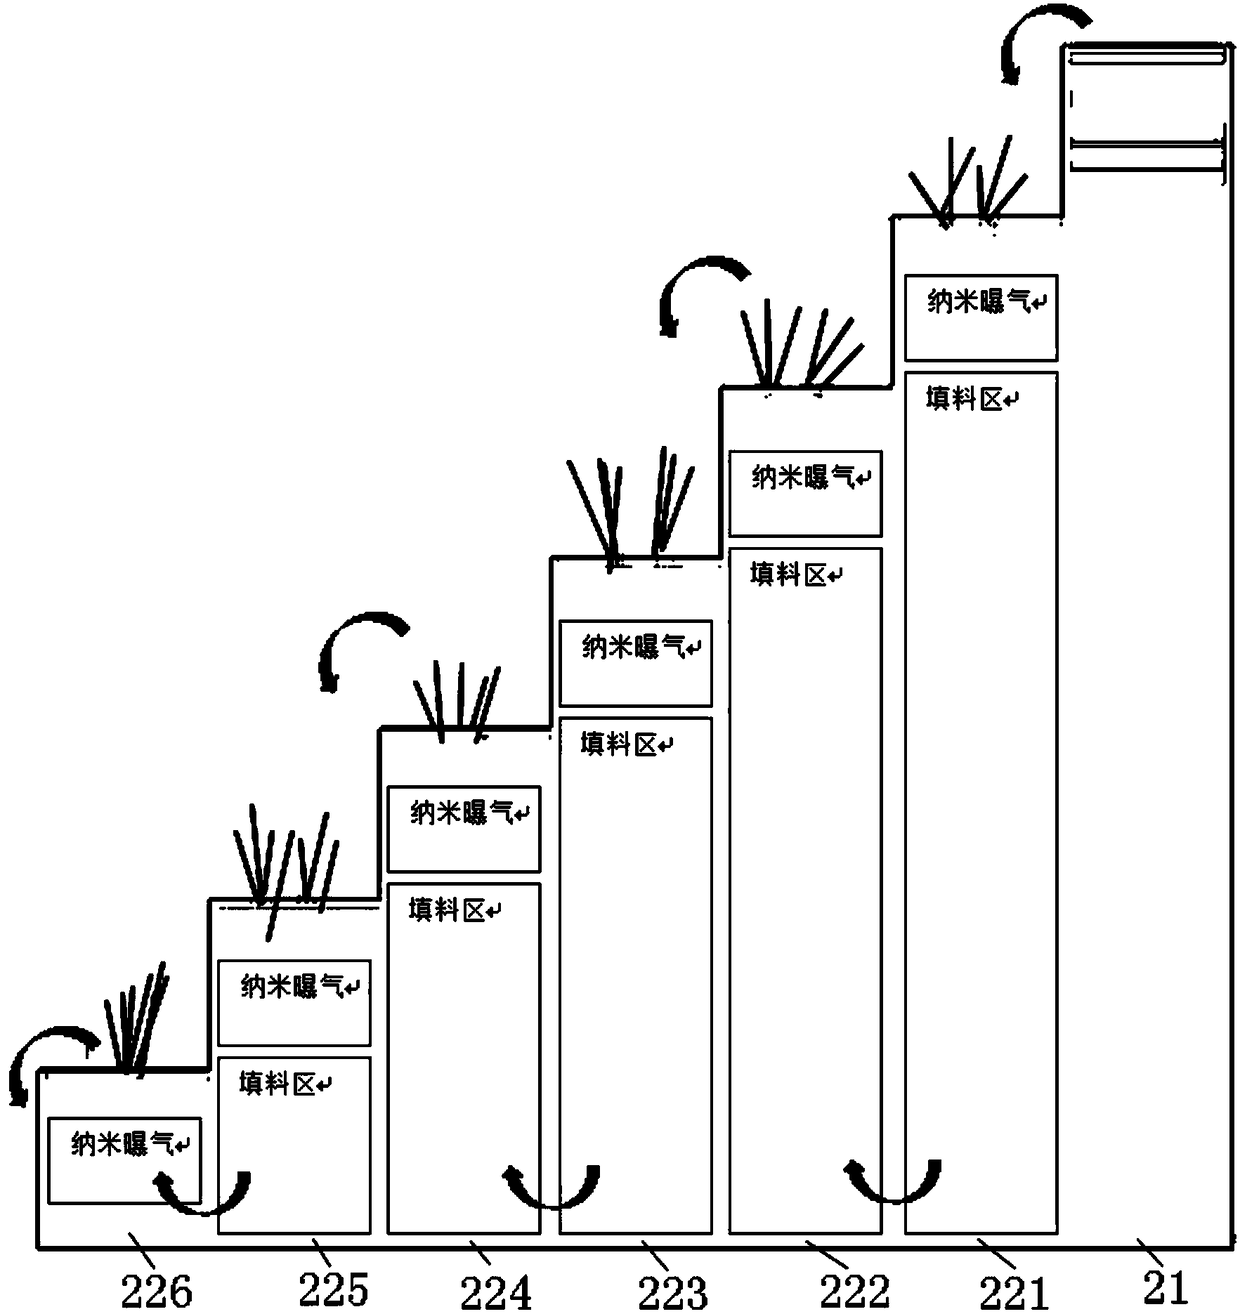 Landscape water plant arranged in urban green belt